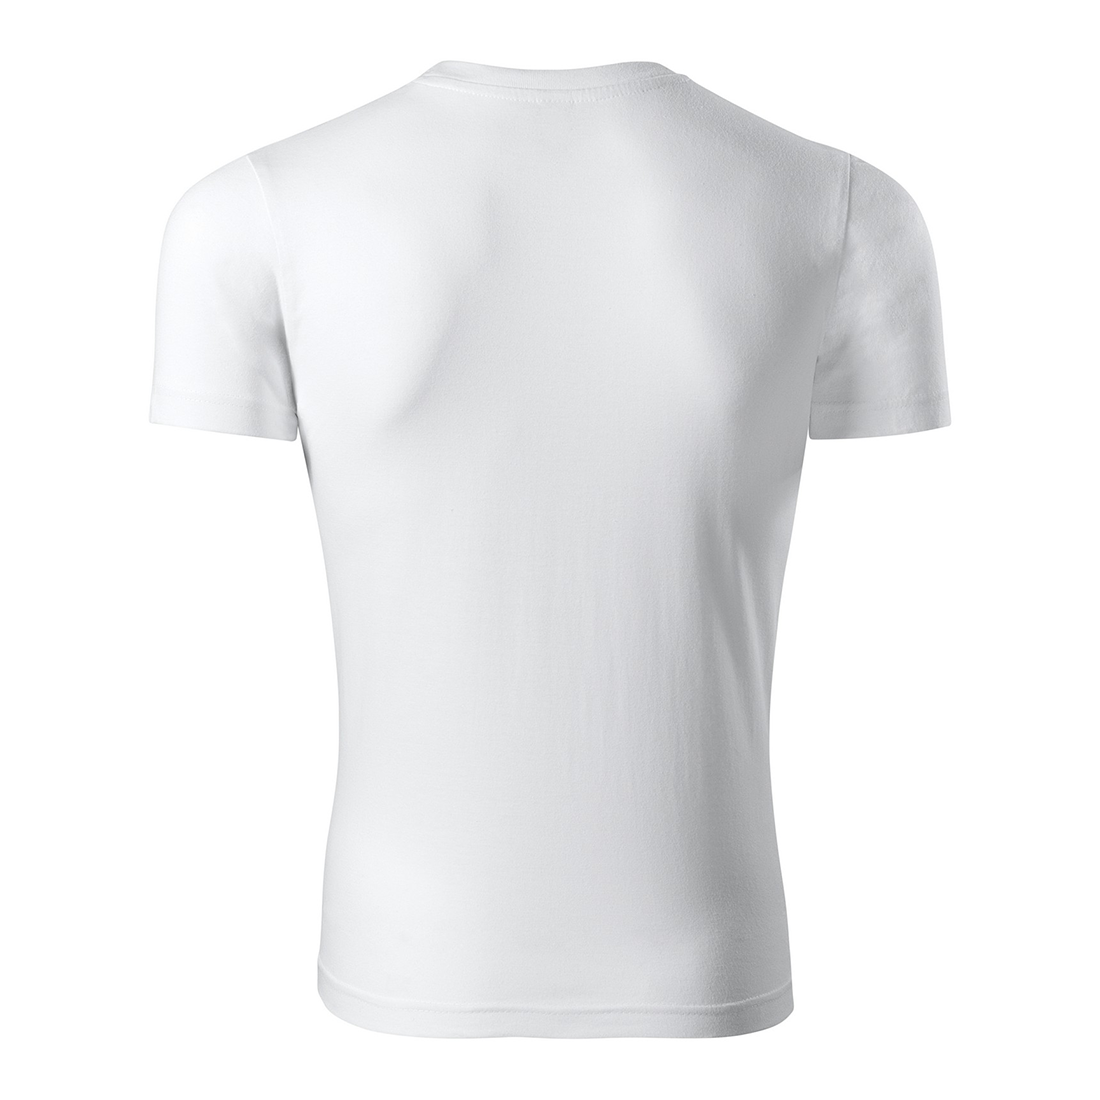 Unisex-T-Shirt aus Baumwolle - Arbeitskleidung